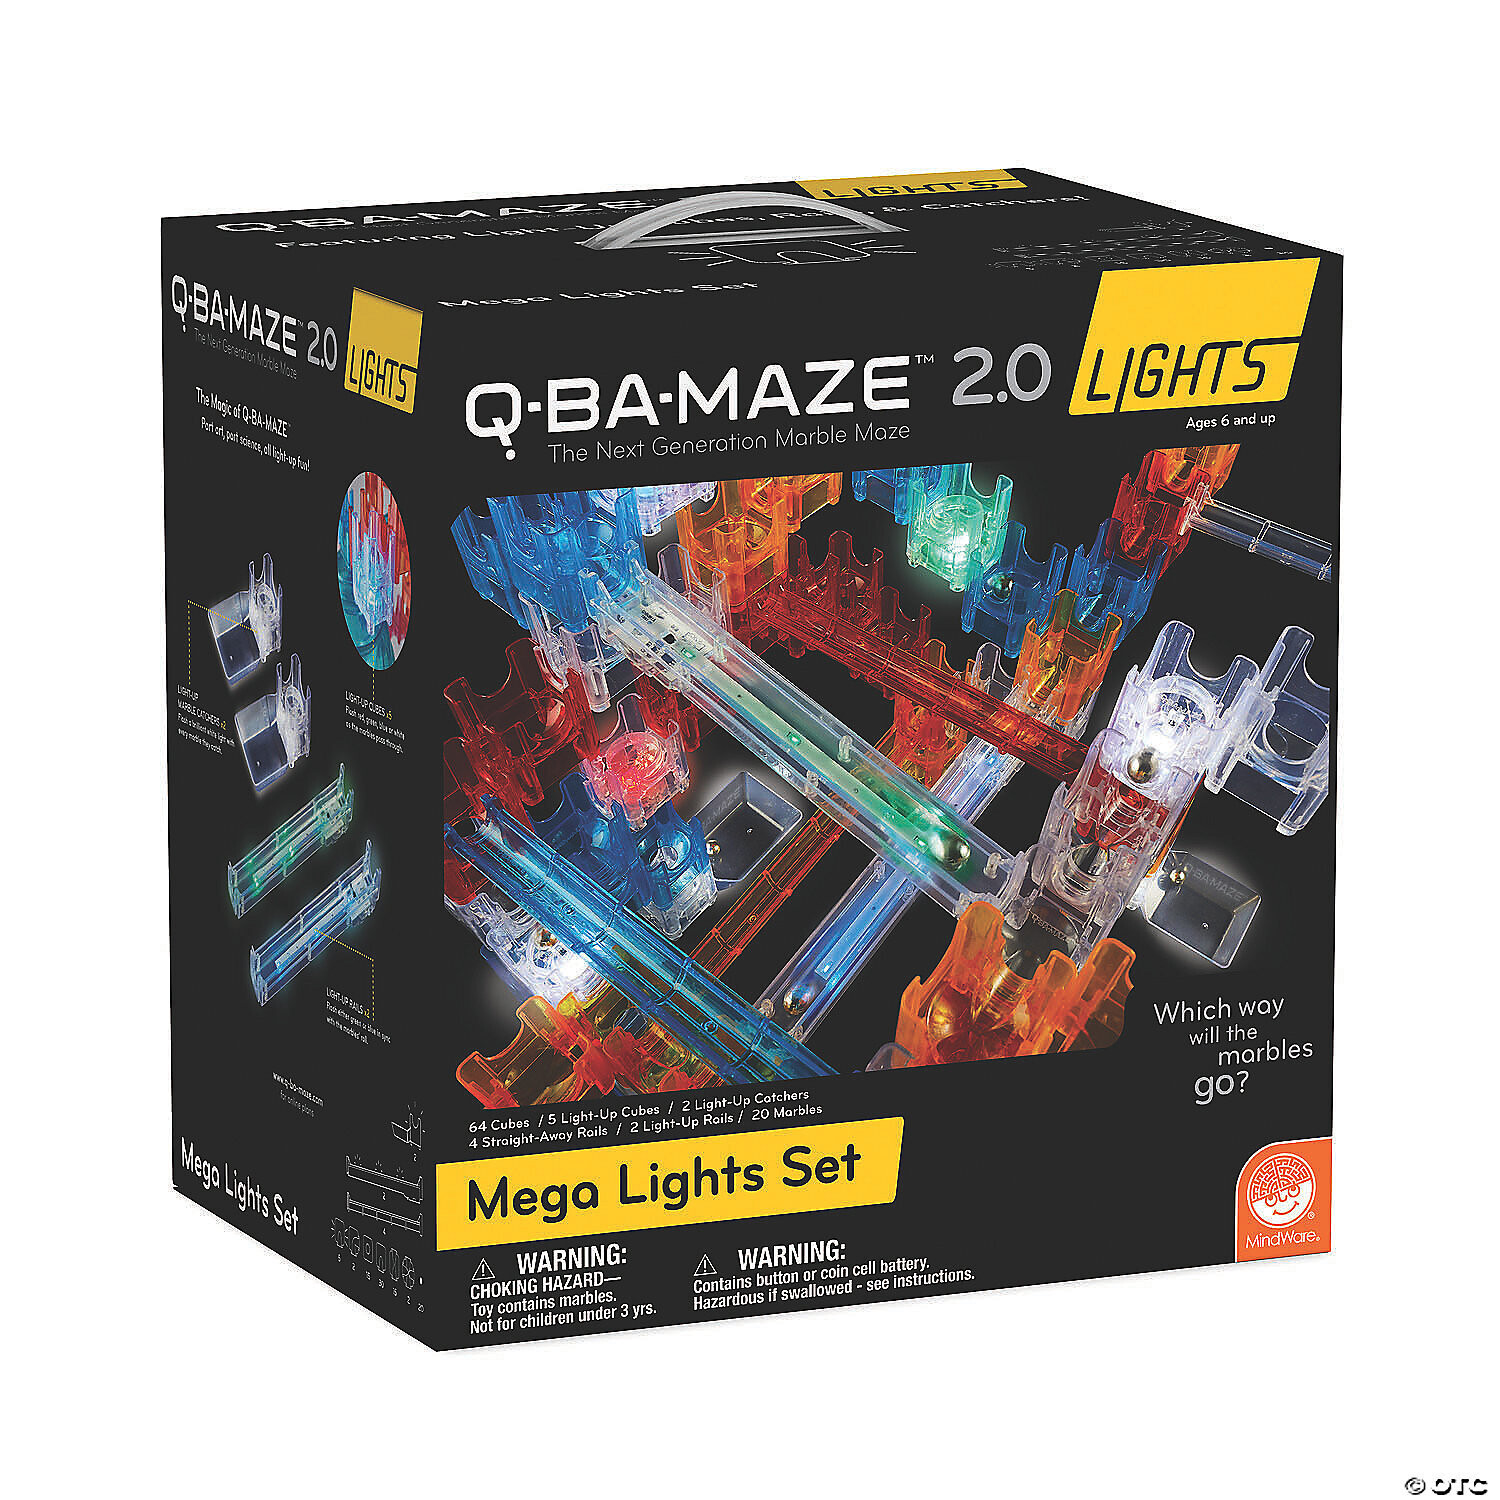 Q-Ba-Maze Mega Lights Set